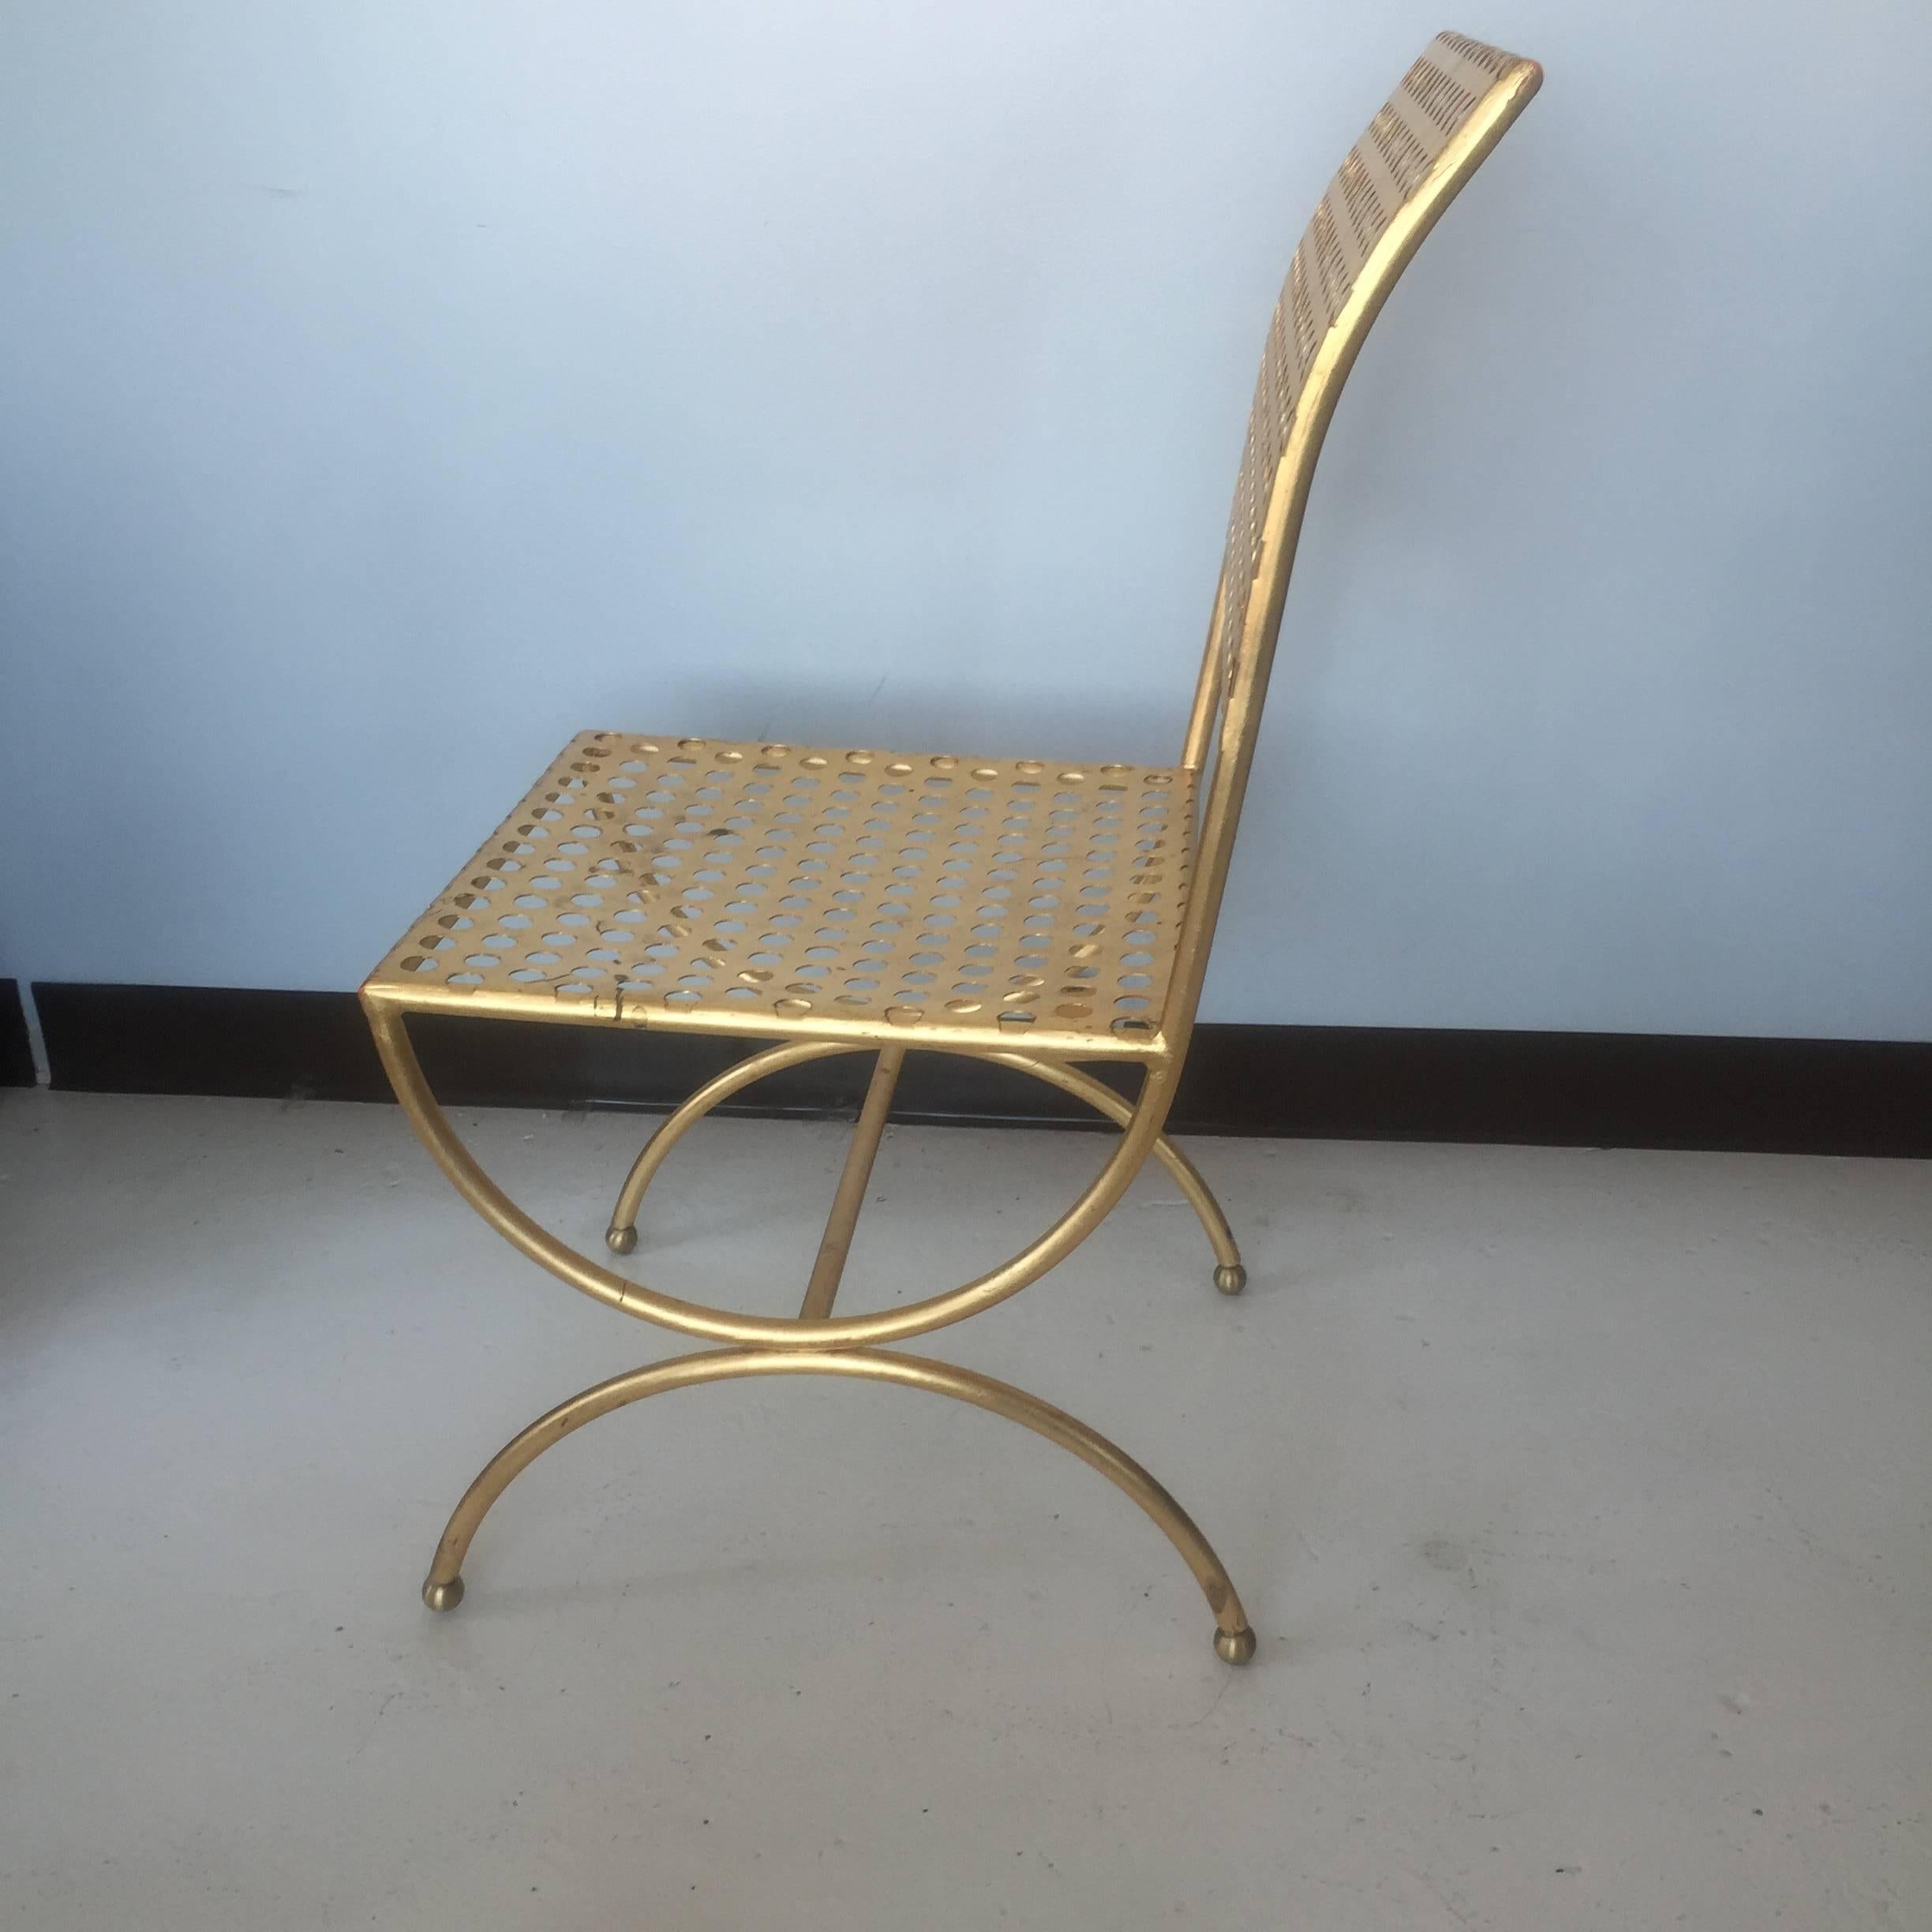 Chaise en fer doré perforé conçue par Tony Duquette dans les années 1960, produite pour Baker vers 2011.